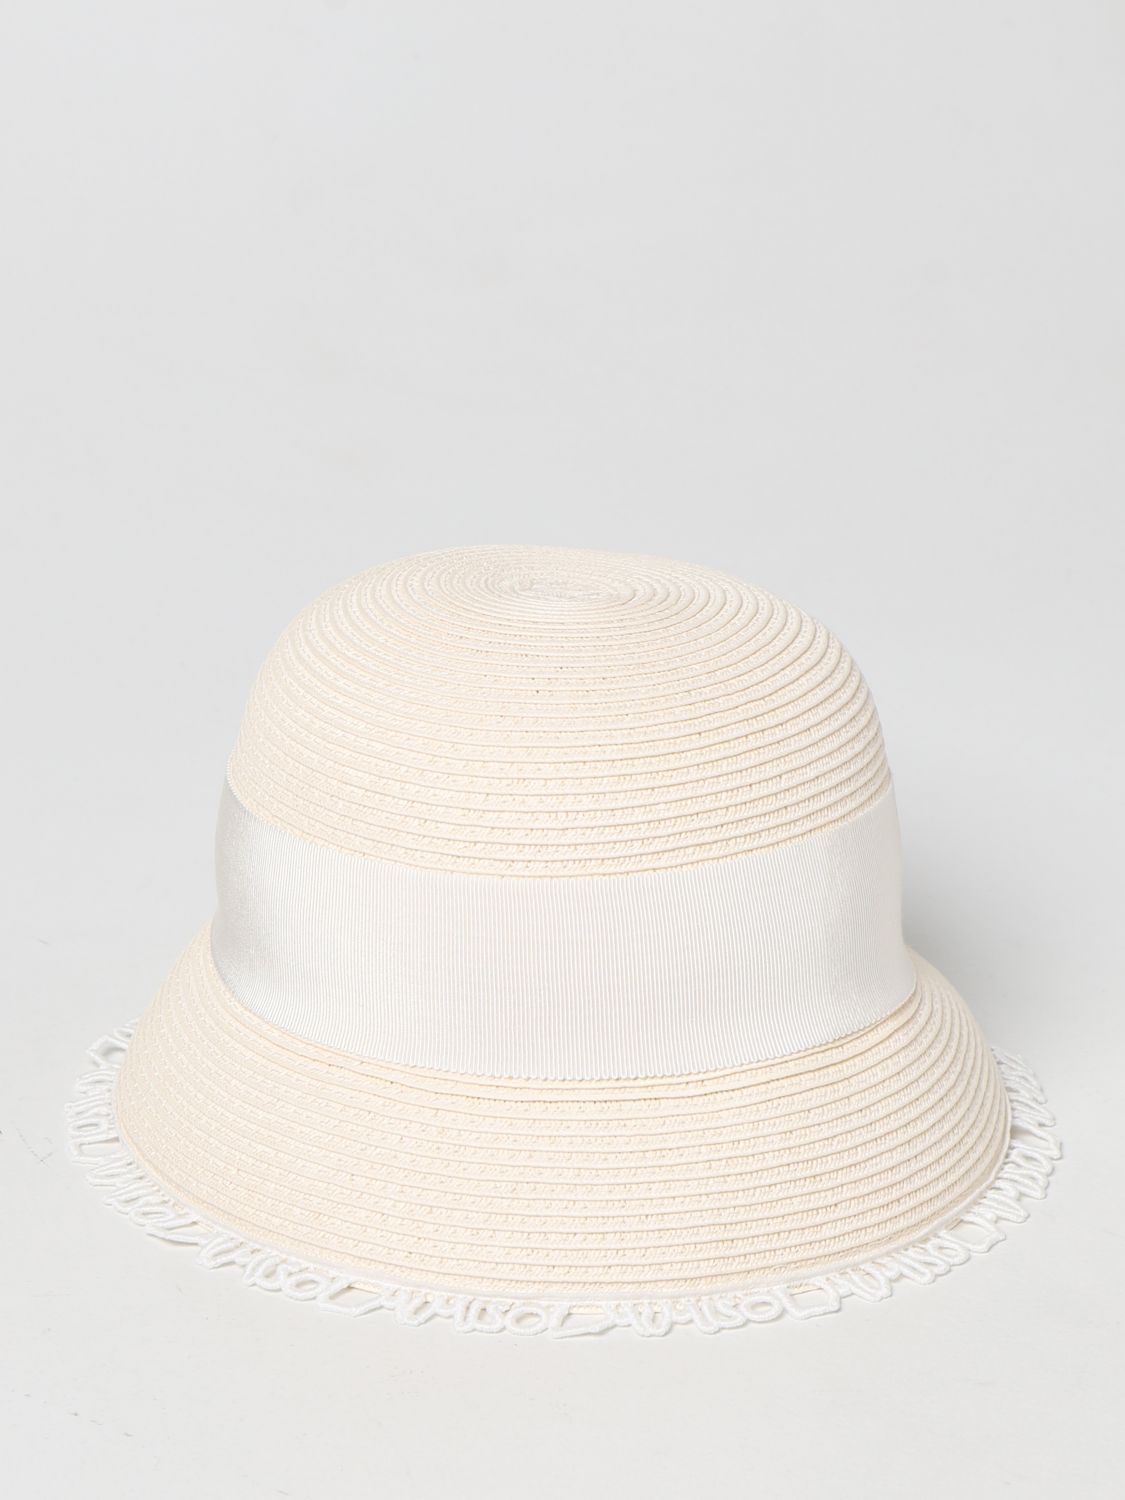 Girls' hats Mi Mi Sol: Mi Mi Sol hat in woven straw yellow cream 1